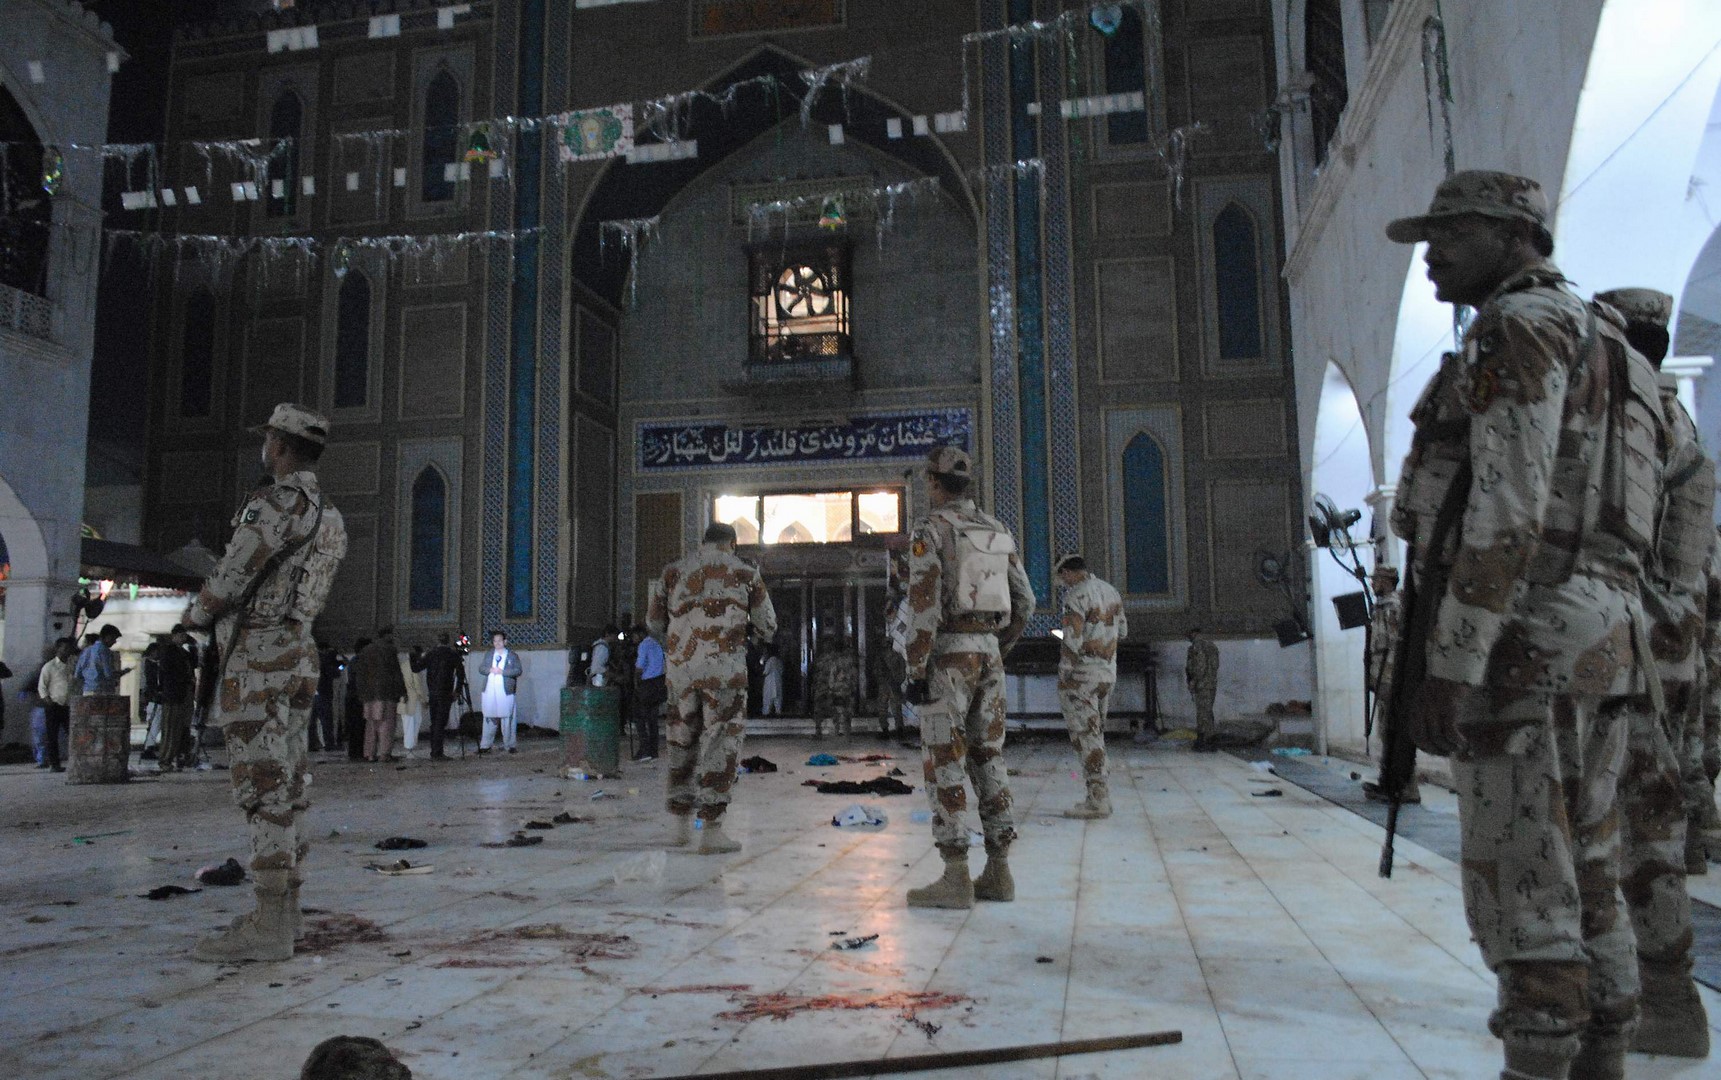 Soldados de Pakistán resguardan el templo sufí, en donde se registró un atentado y dejó 80 muertos. (Archivo/AP)